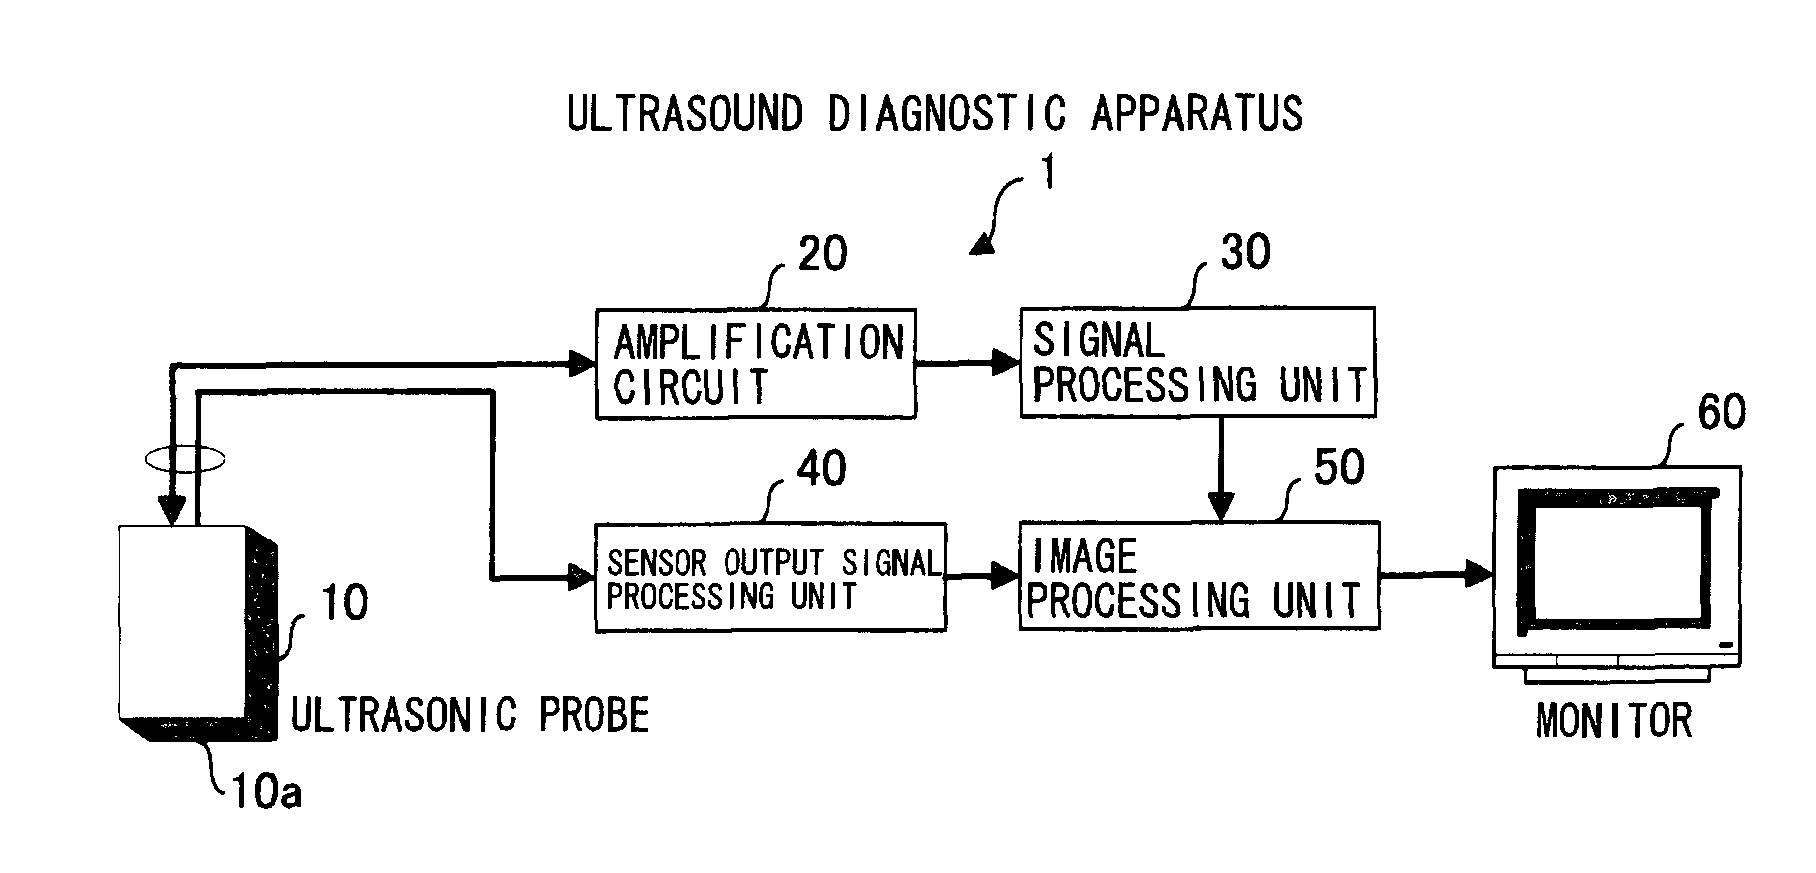 Ultrasound diagnostic apparatus